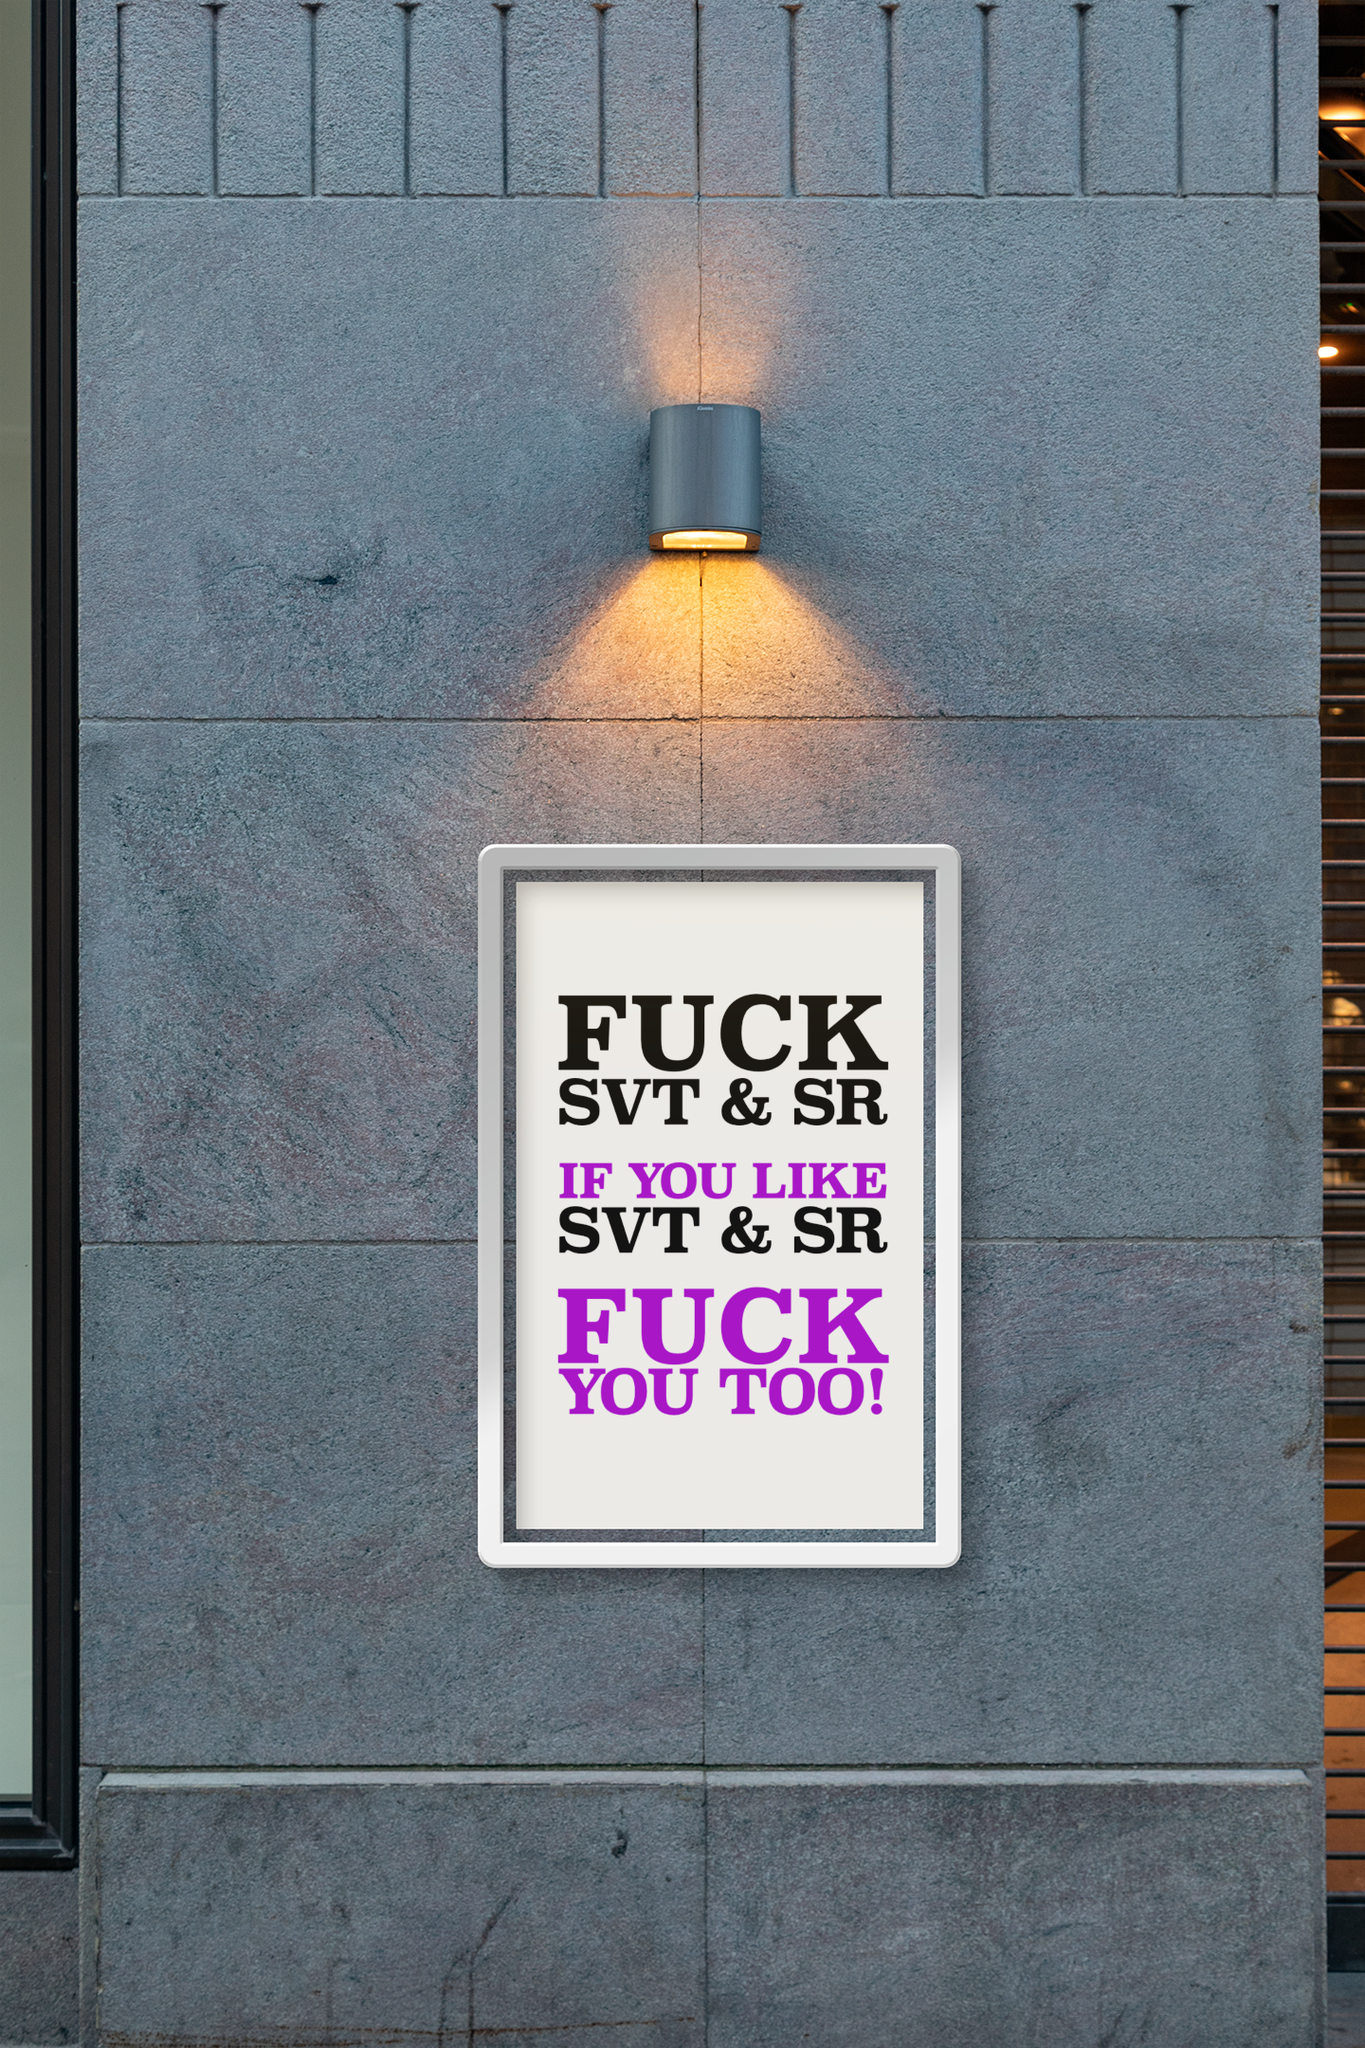 Fuck SVT & SR Poster, Poster Online, Posters Online, BigTech Poster, Sveriges Radio & Television